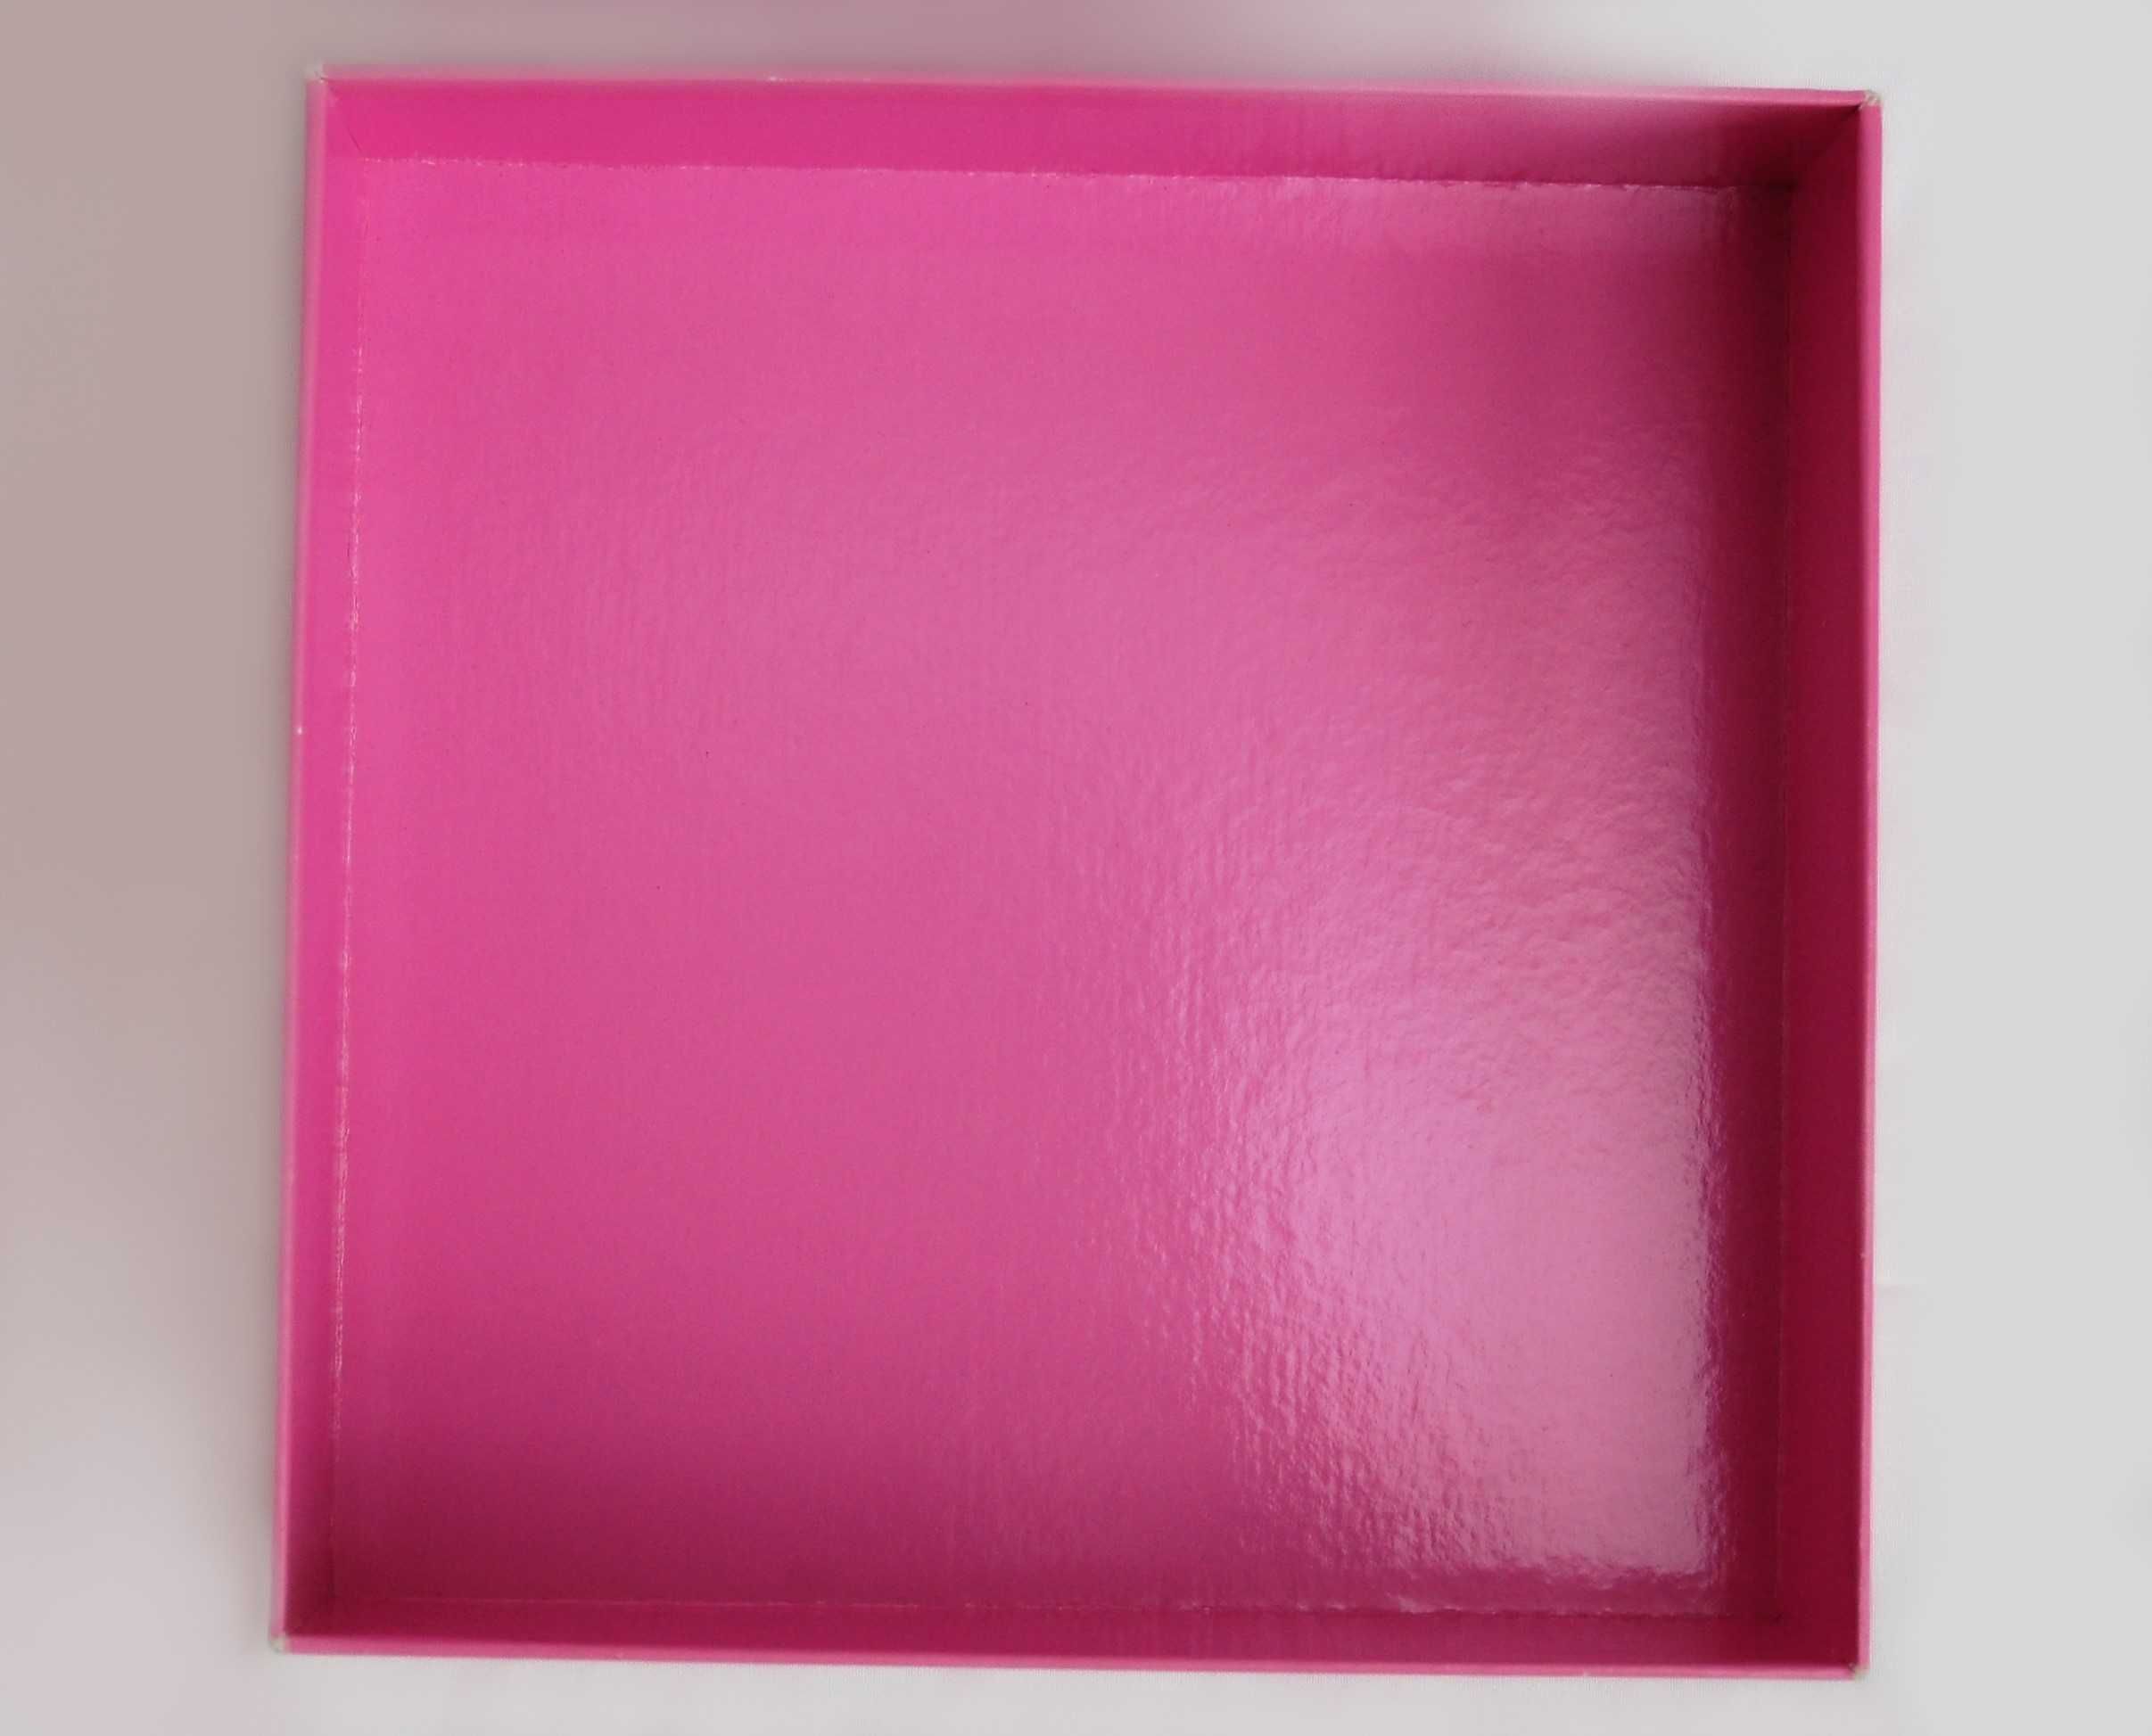 Pudełko na perfumy Escada, różowy welur, vintage